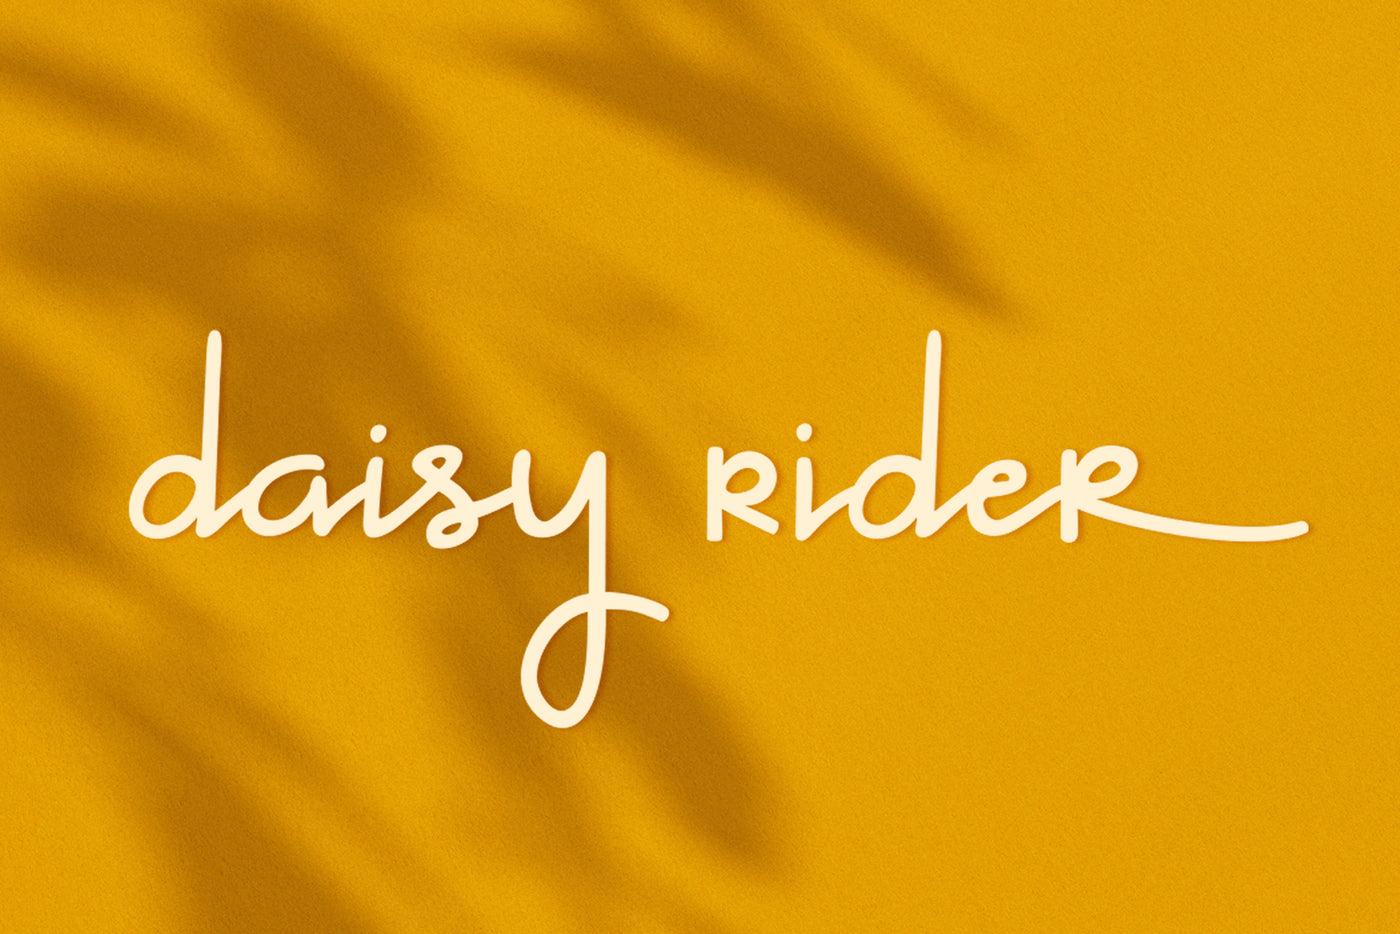 daisy rider